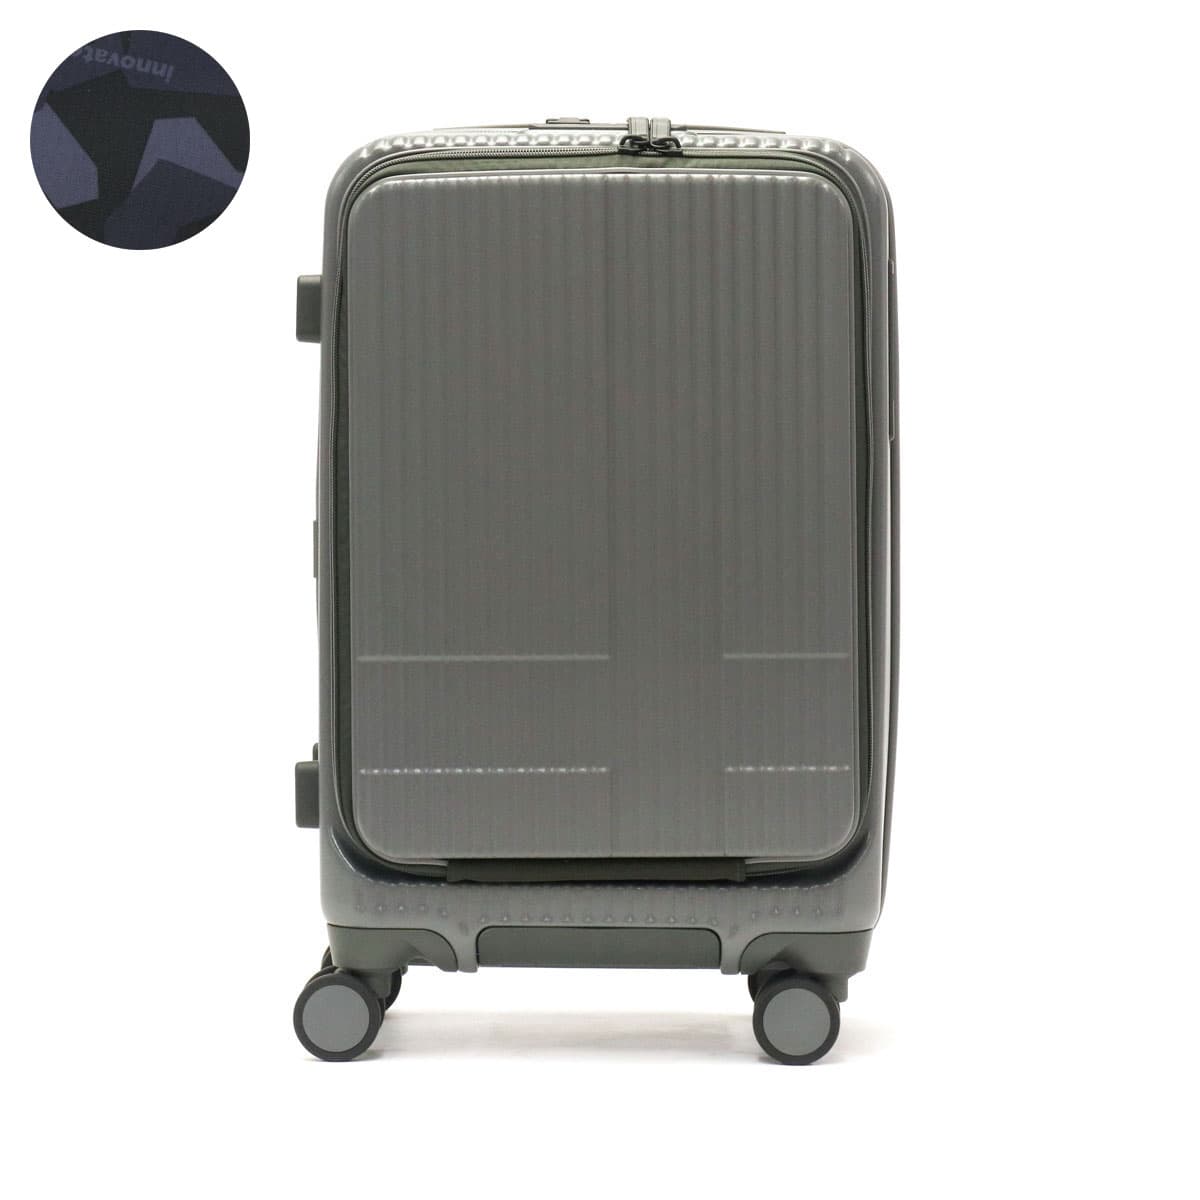 イノベーターINV50 スーツケース